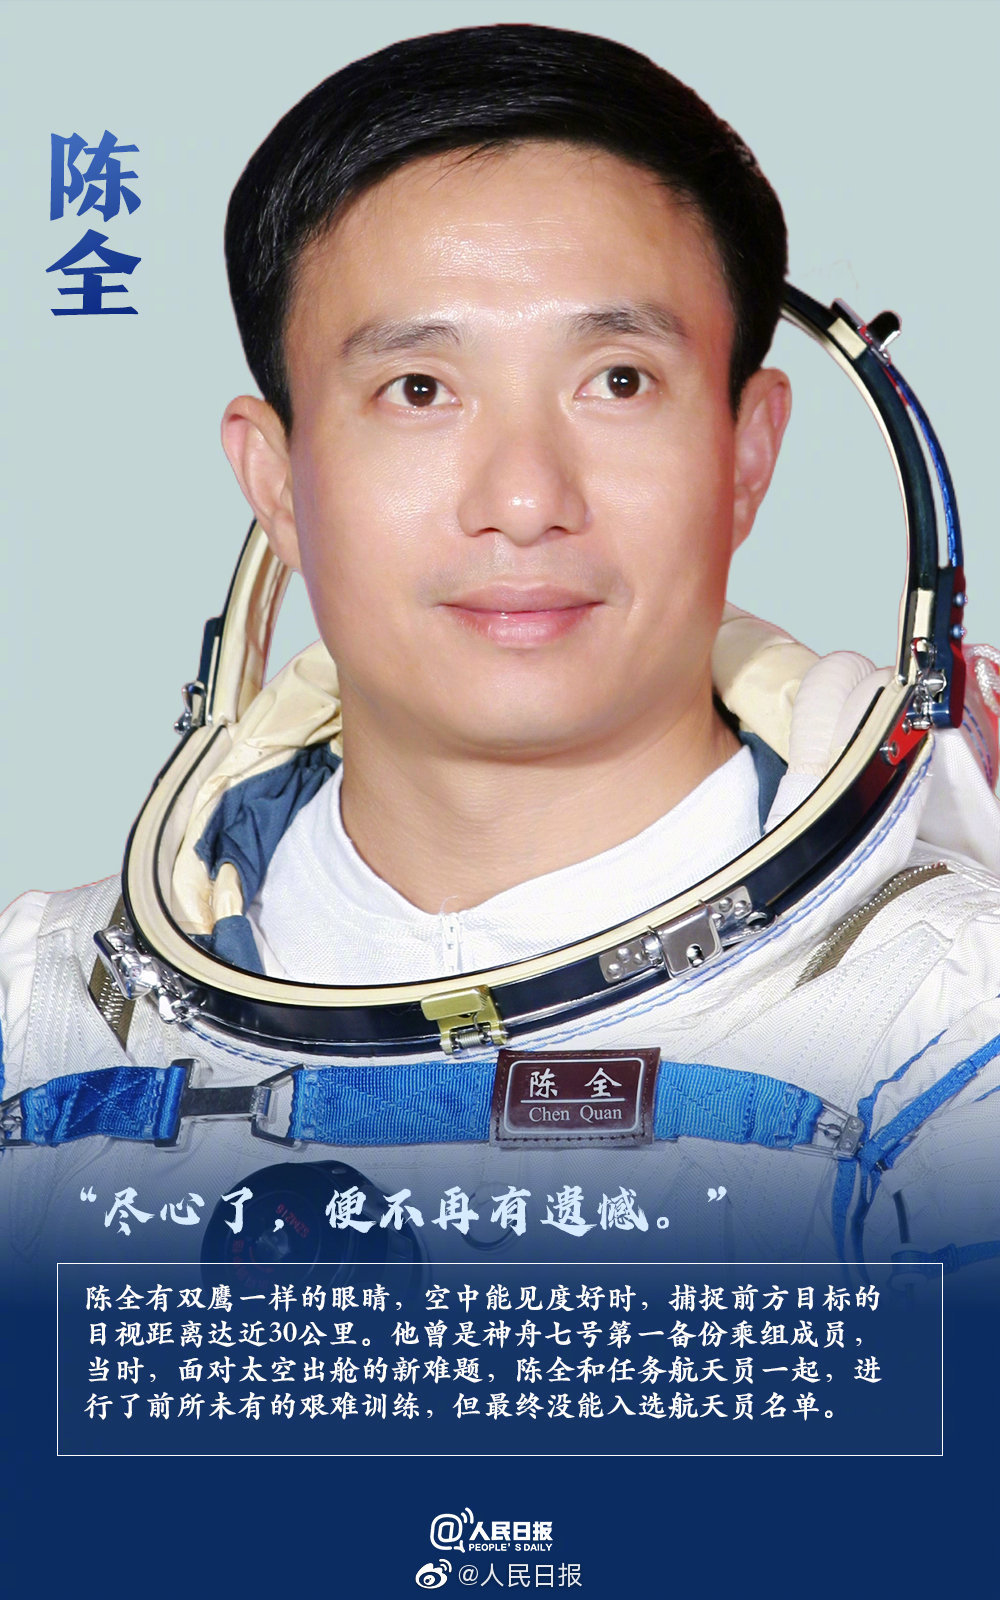 李庆龙,吴杰邓清明,陈全,赵传东中国首批14名航天员6人未上太空战友